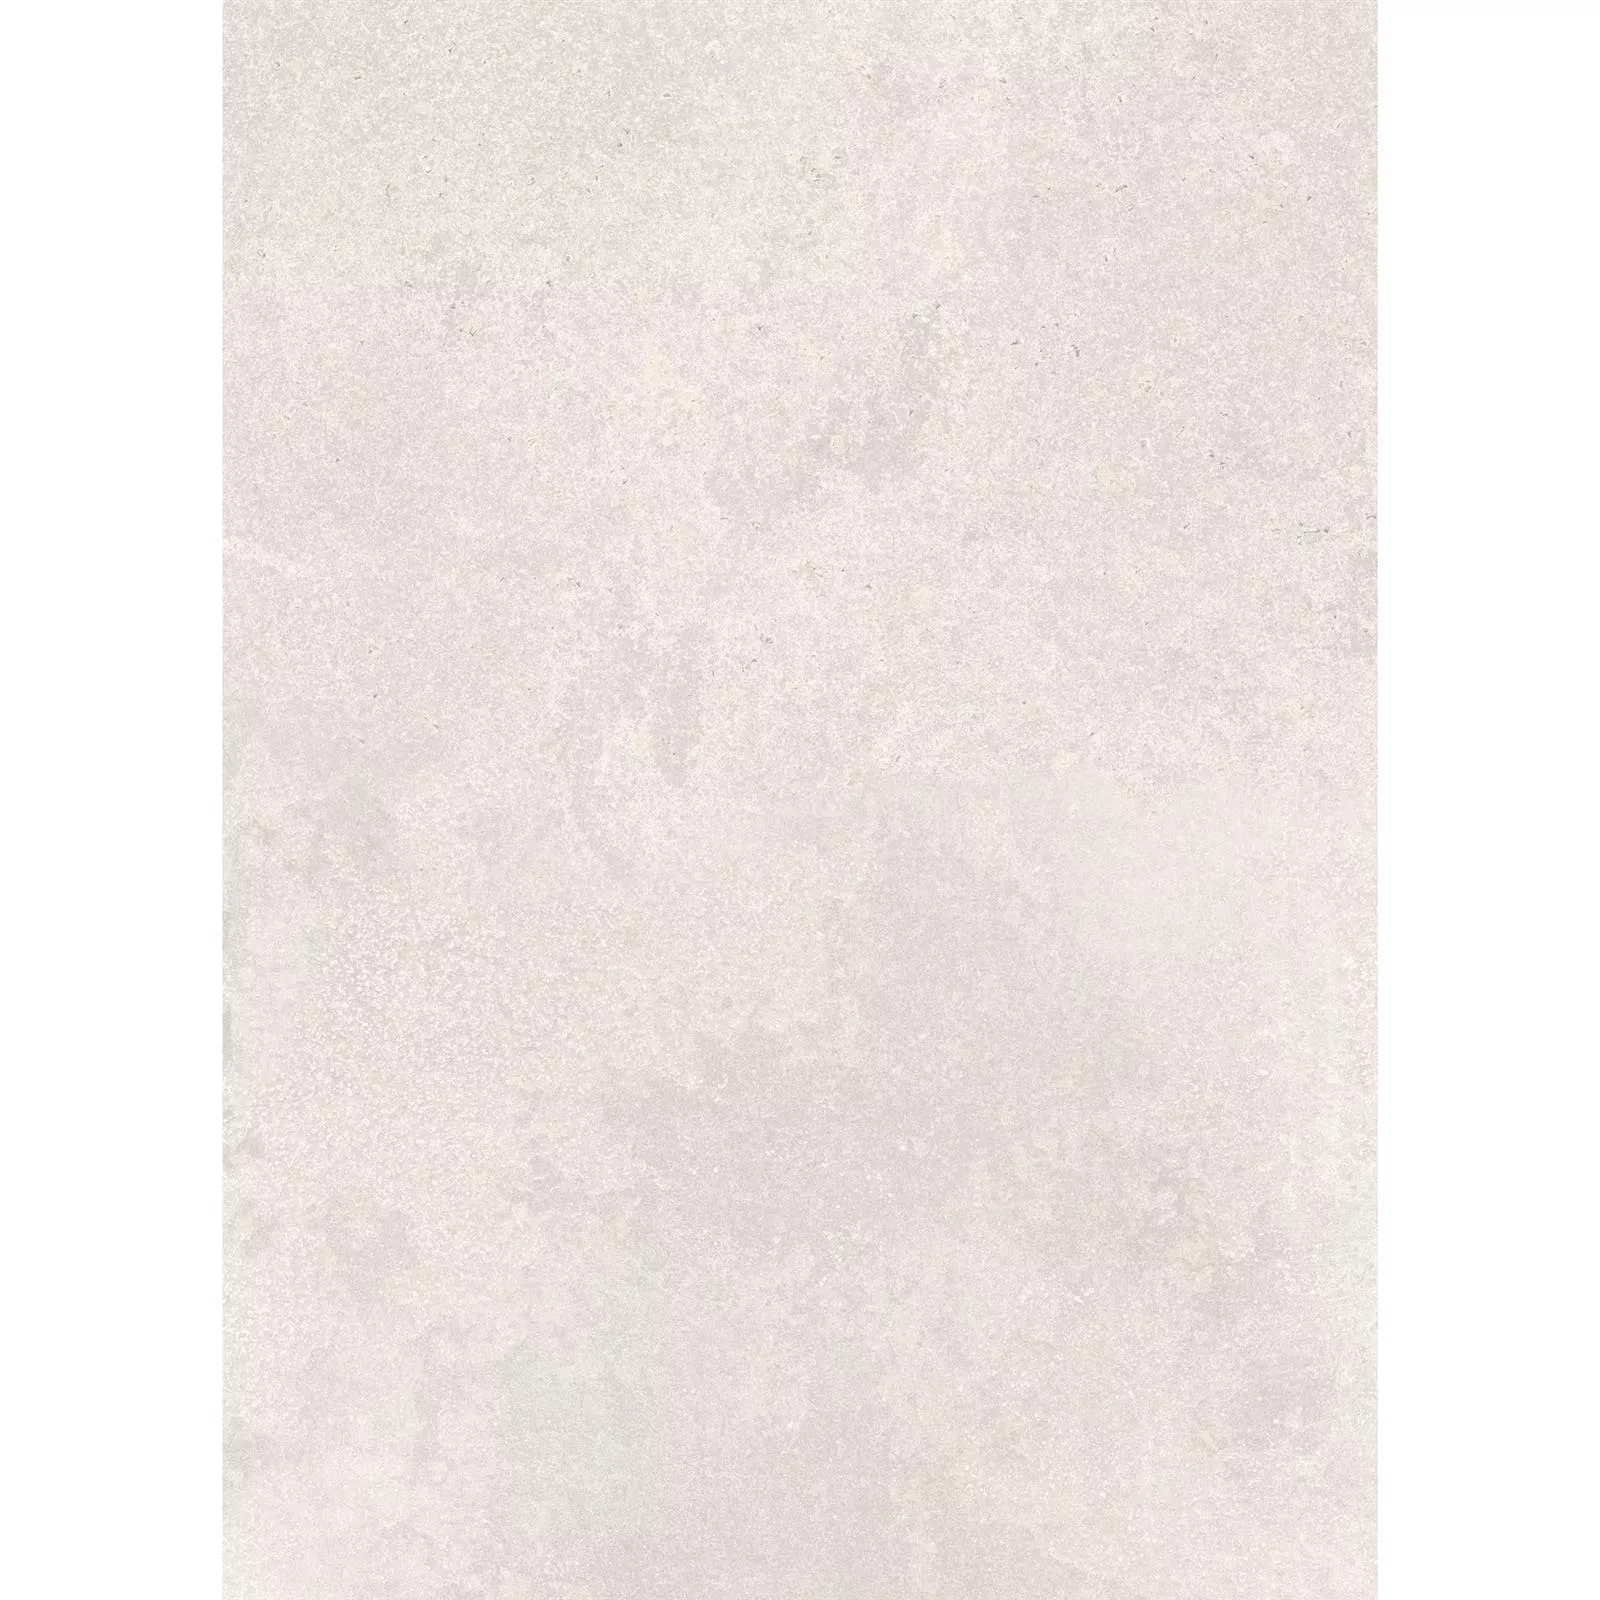 Πρότυπο Πλακάκια Δαπέδου Πέτρινη Όψη Horizon Μπεζ 60x120cm